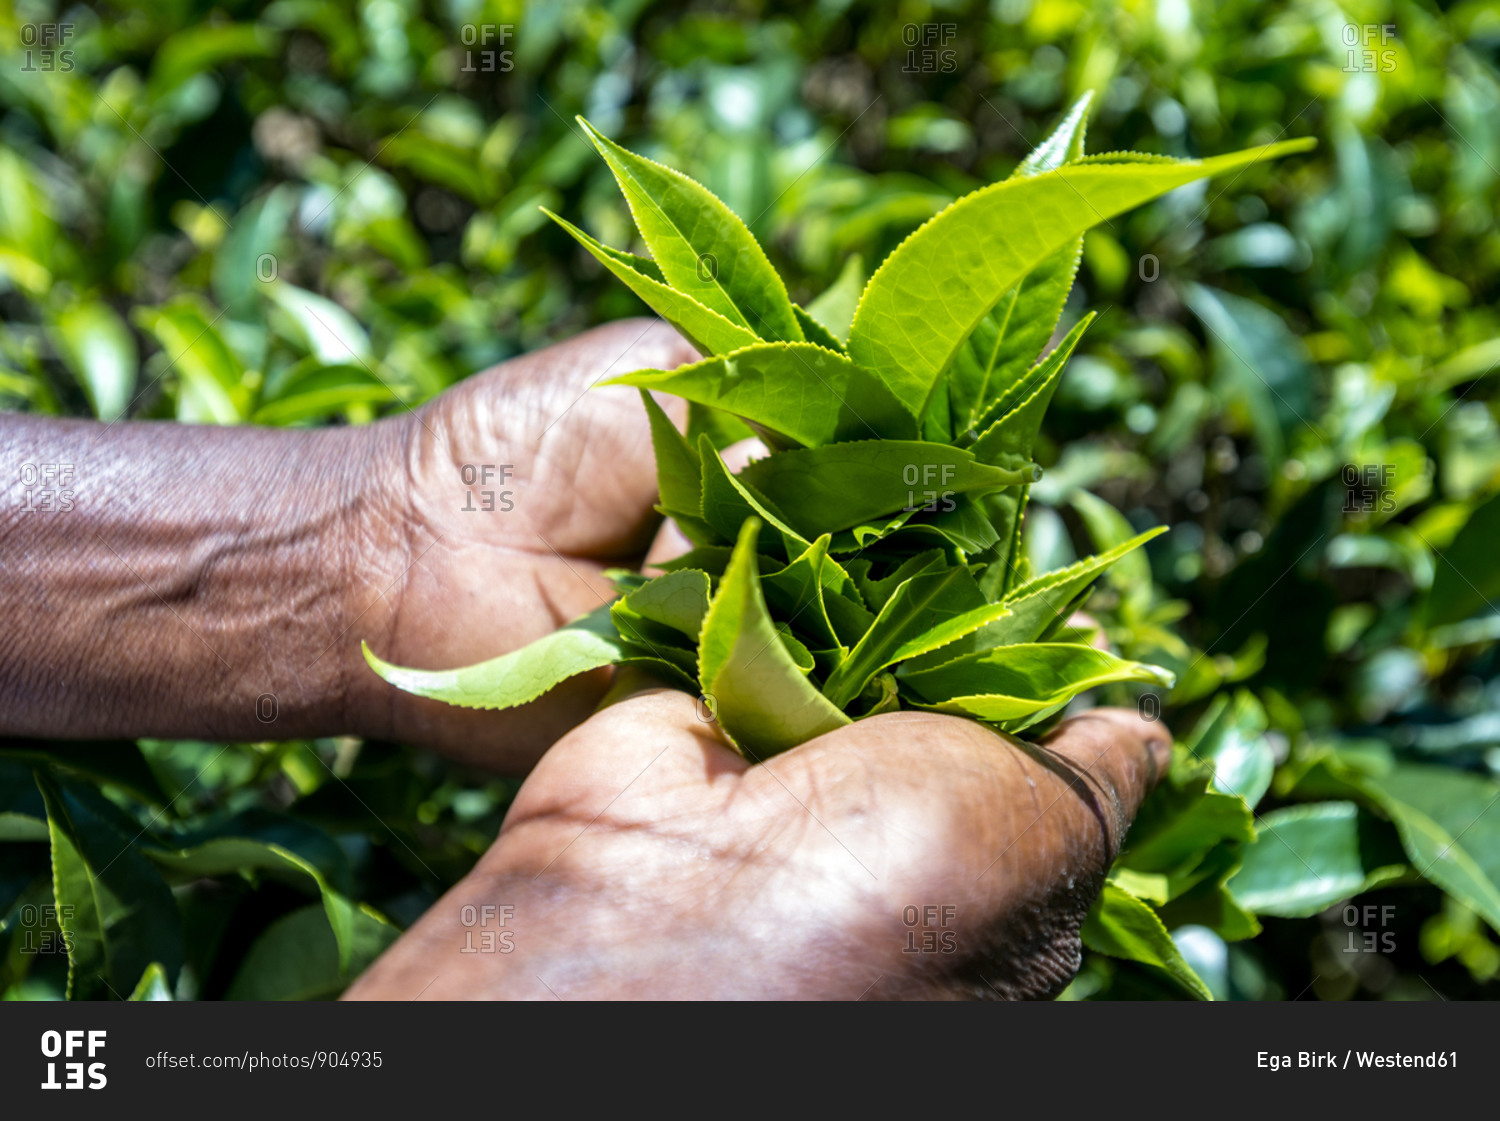 Sri Lanka- Uva Province- Haputale- Close-up of hands picking tea leaves